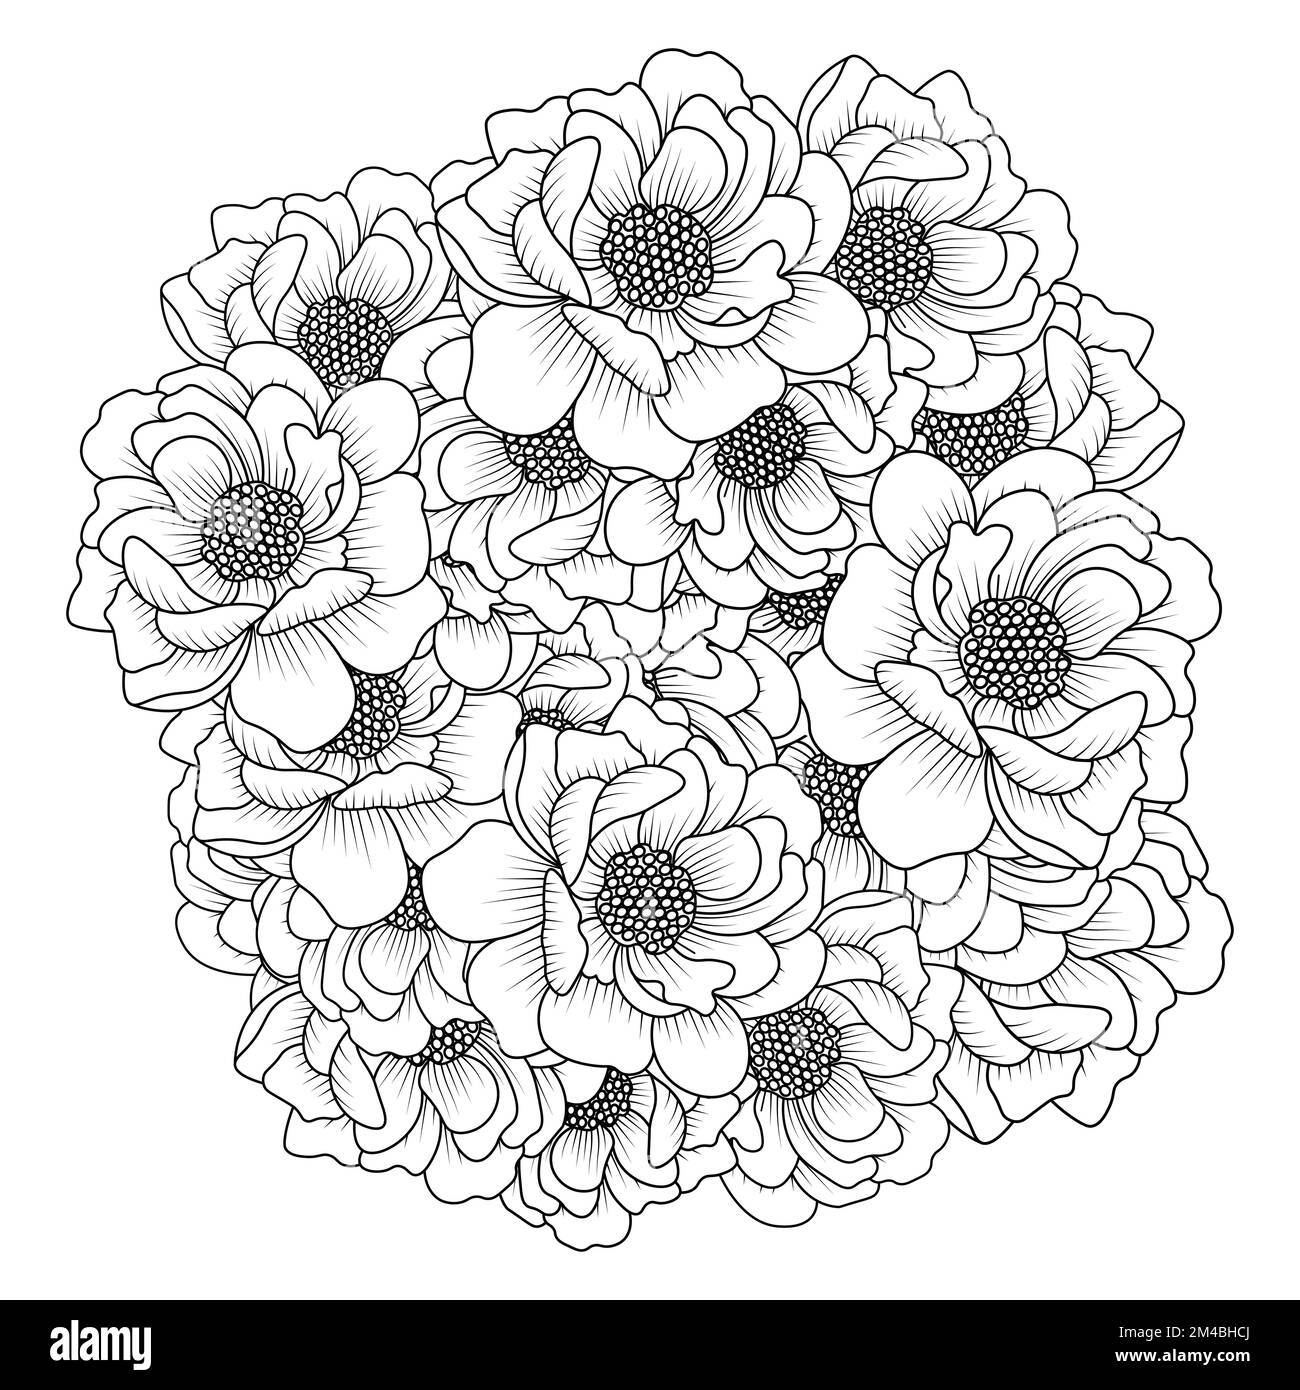 peony fiore facile schizzi matita disegno di linea bianco e nero disegno disegno arte contorno Illustrazione Vettoriale